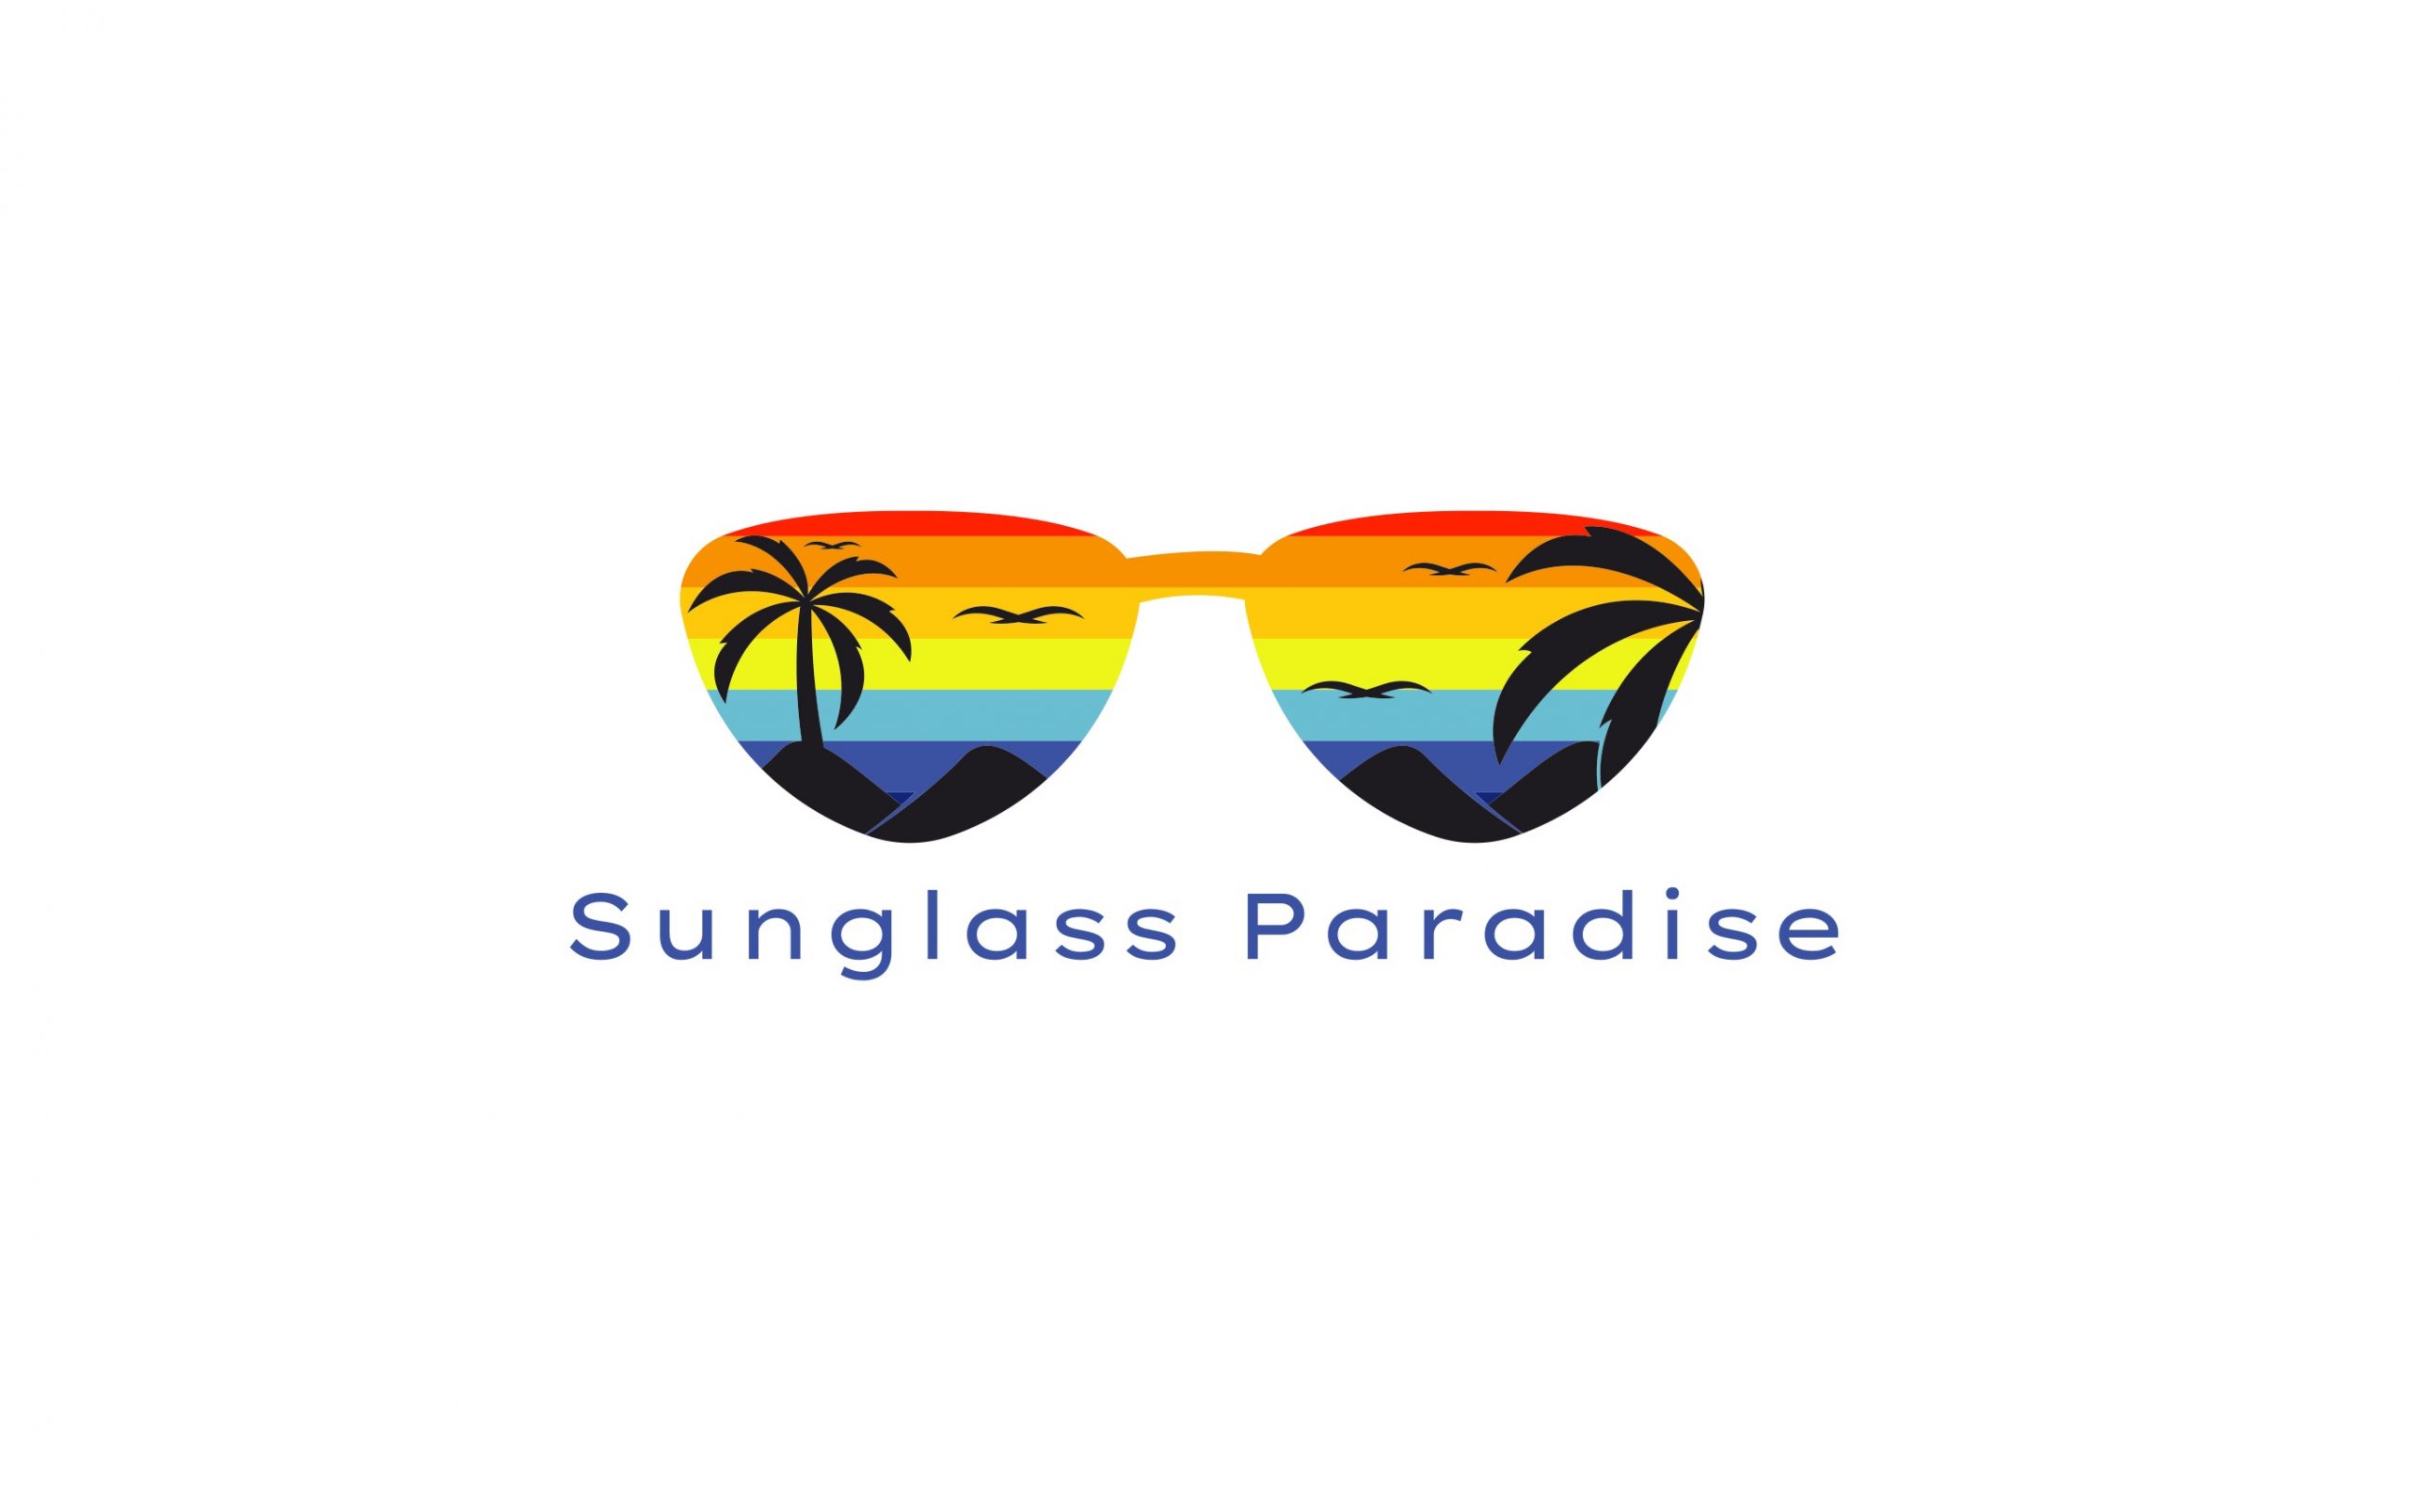 http://oldemistickvillage.com/wp-content/uploads/2020/11/sunglass-paradise-logo-scaled.jpg